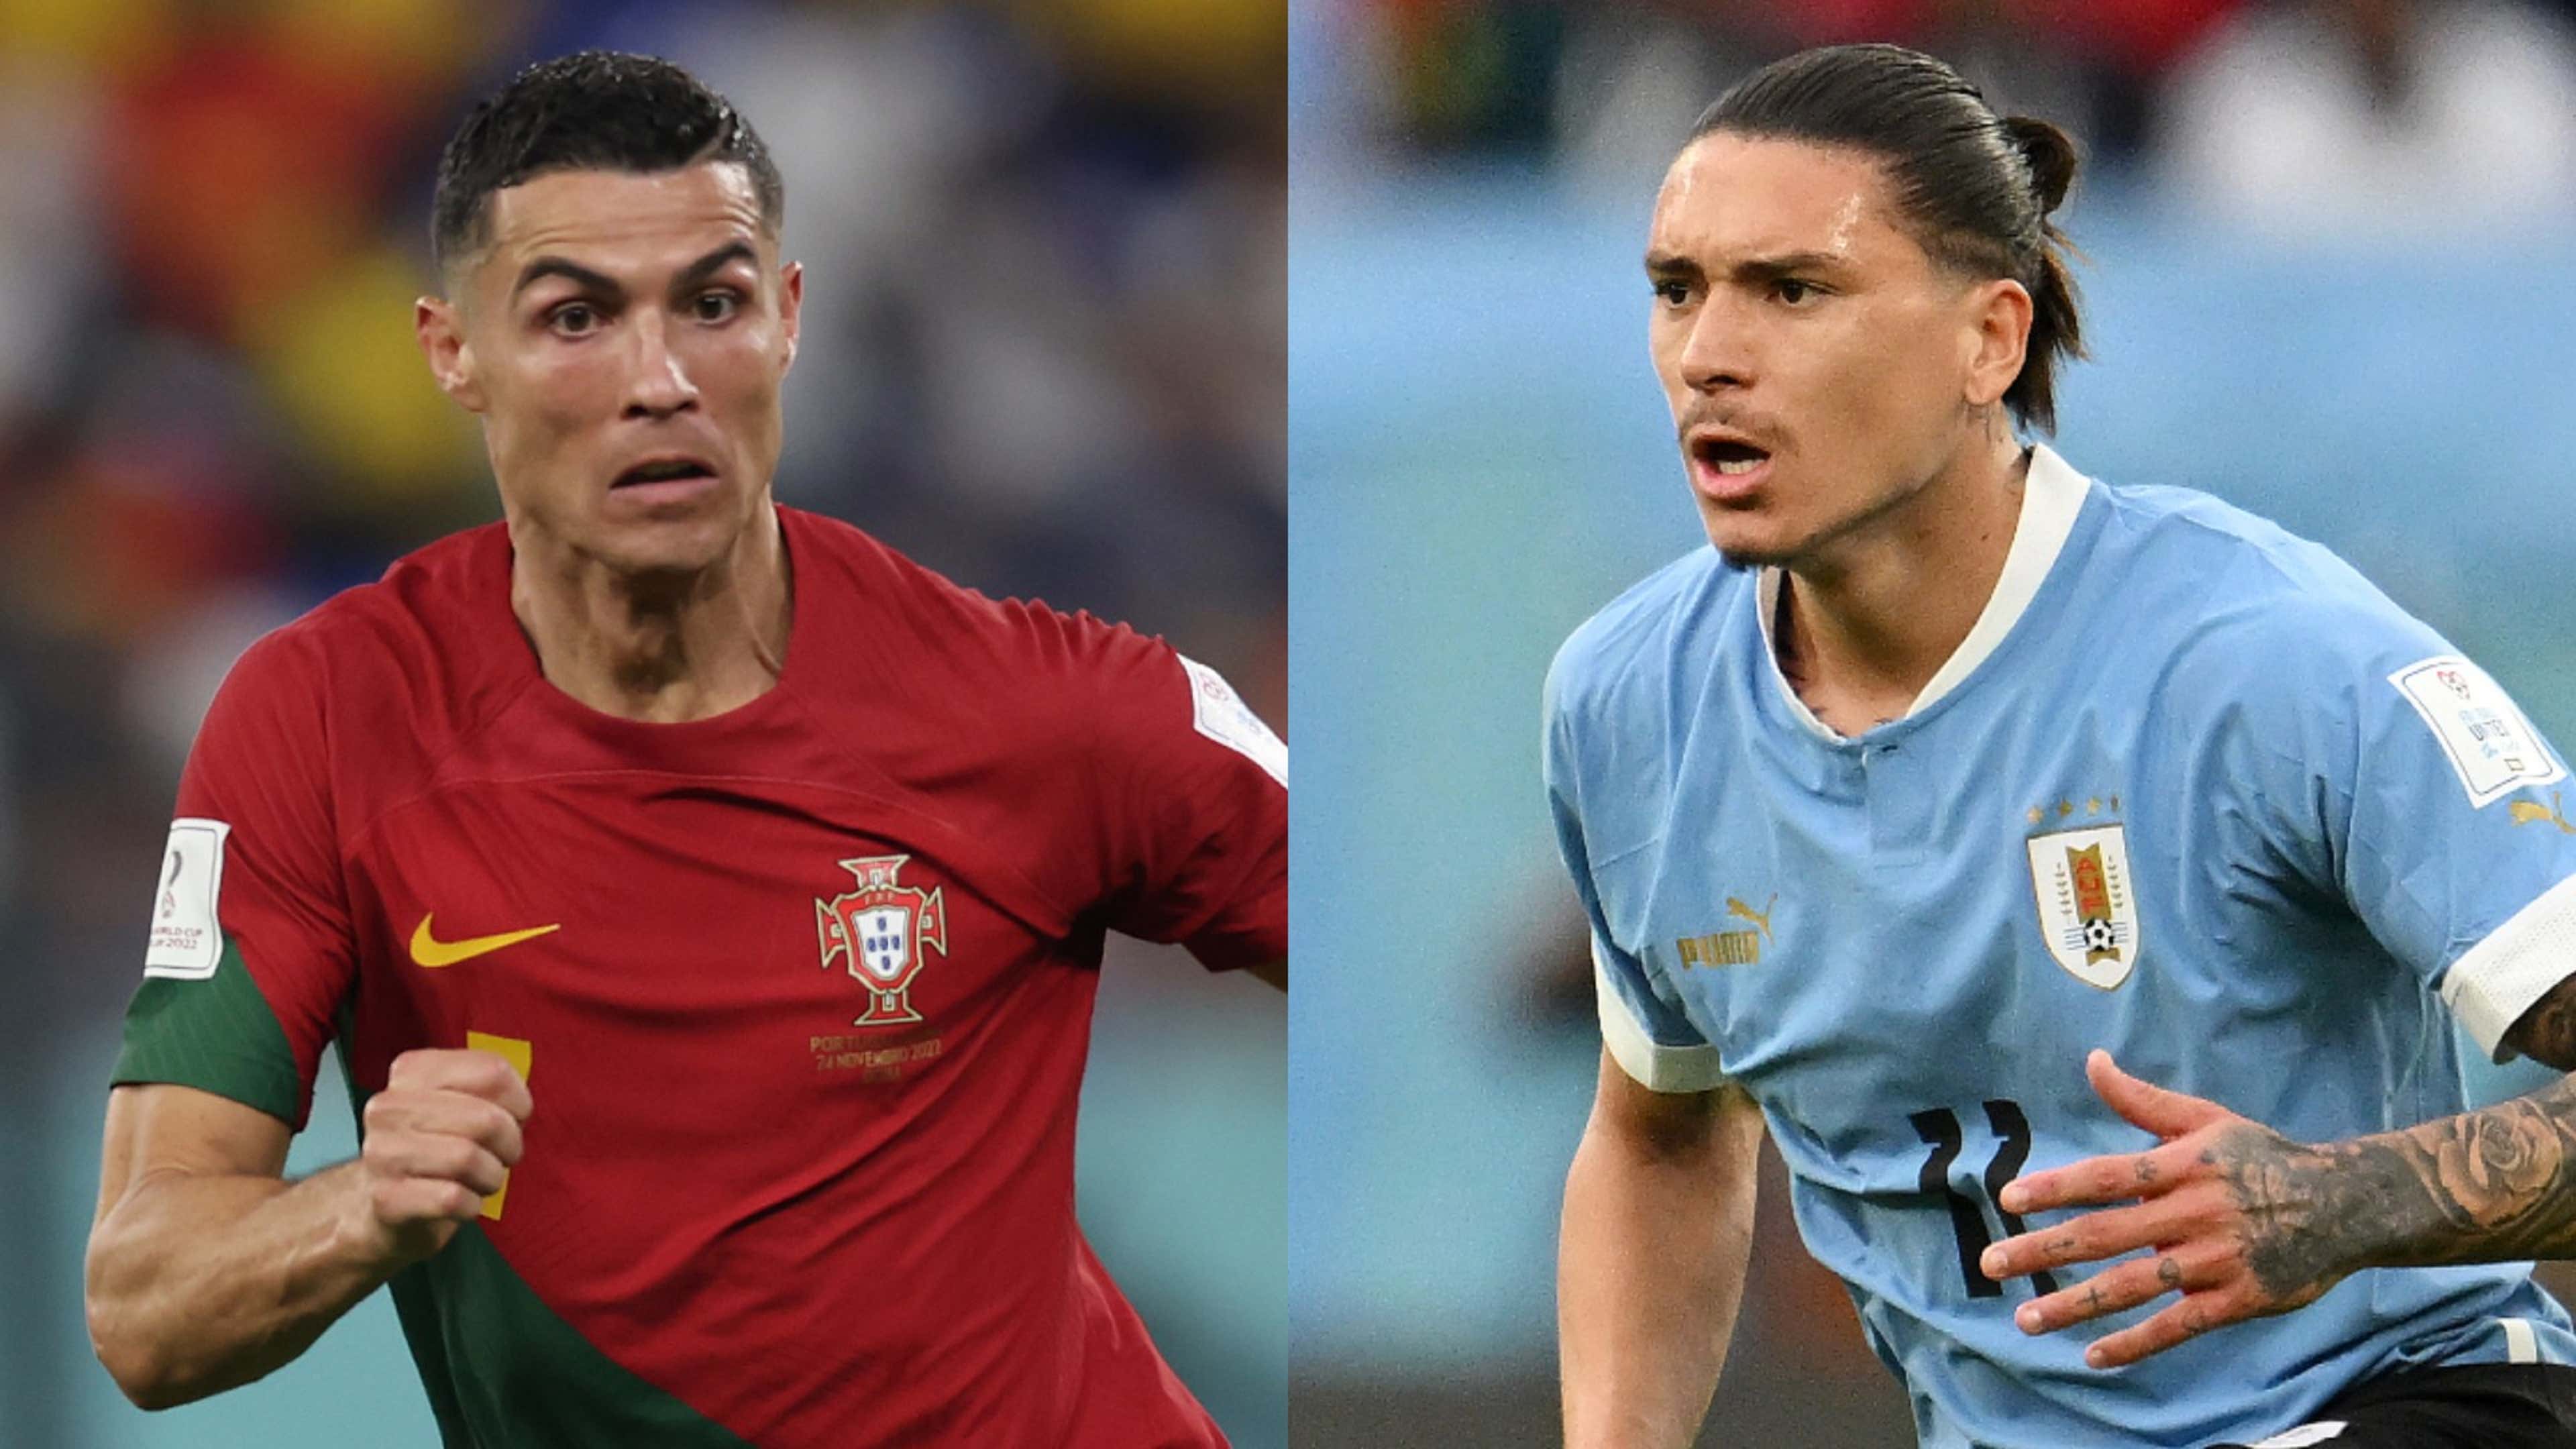 Mundial Qatar 2022 en vivo: Portugal vs. Uruguay en TV, streaming y  alineaciones